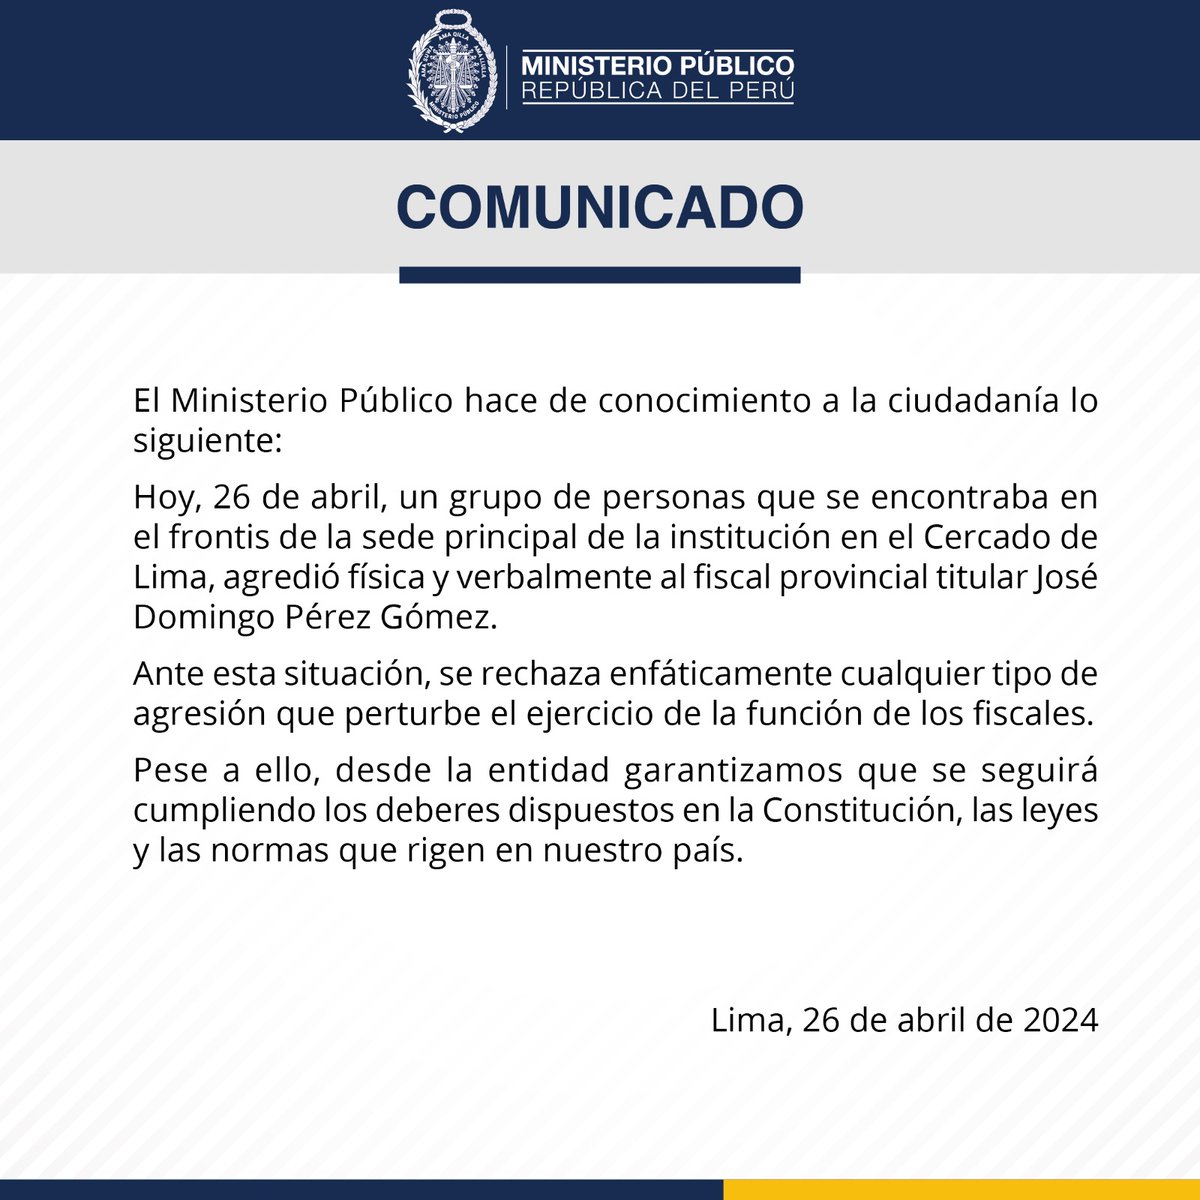 📢 Ministerio Público rechaza agresión física y verbal a fiscal provincial José Domingo Pérez Gómez.